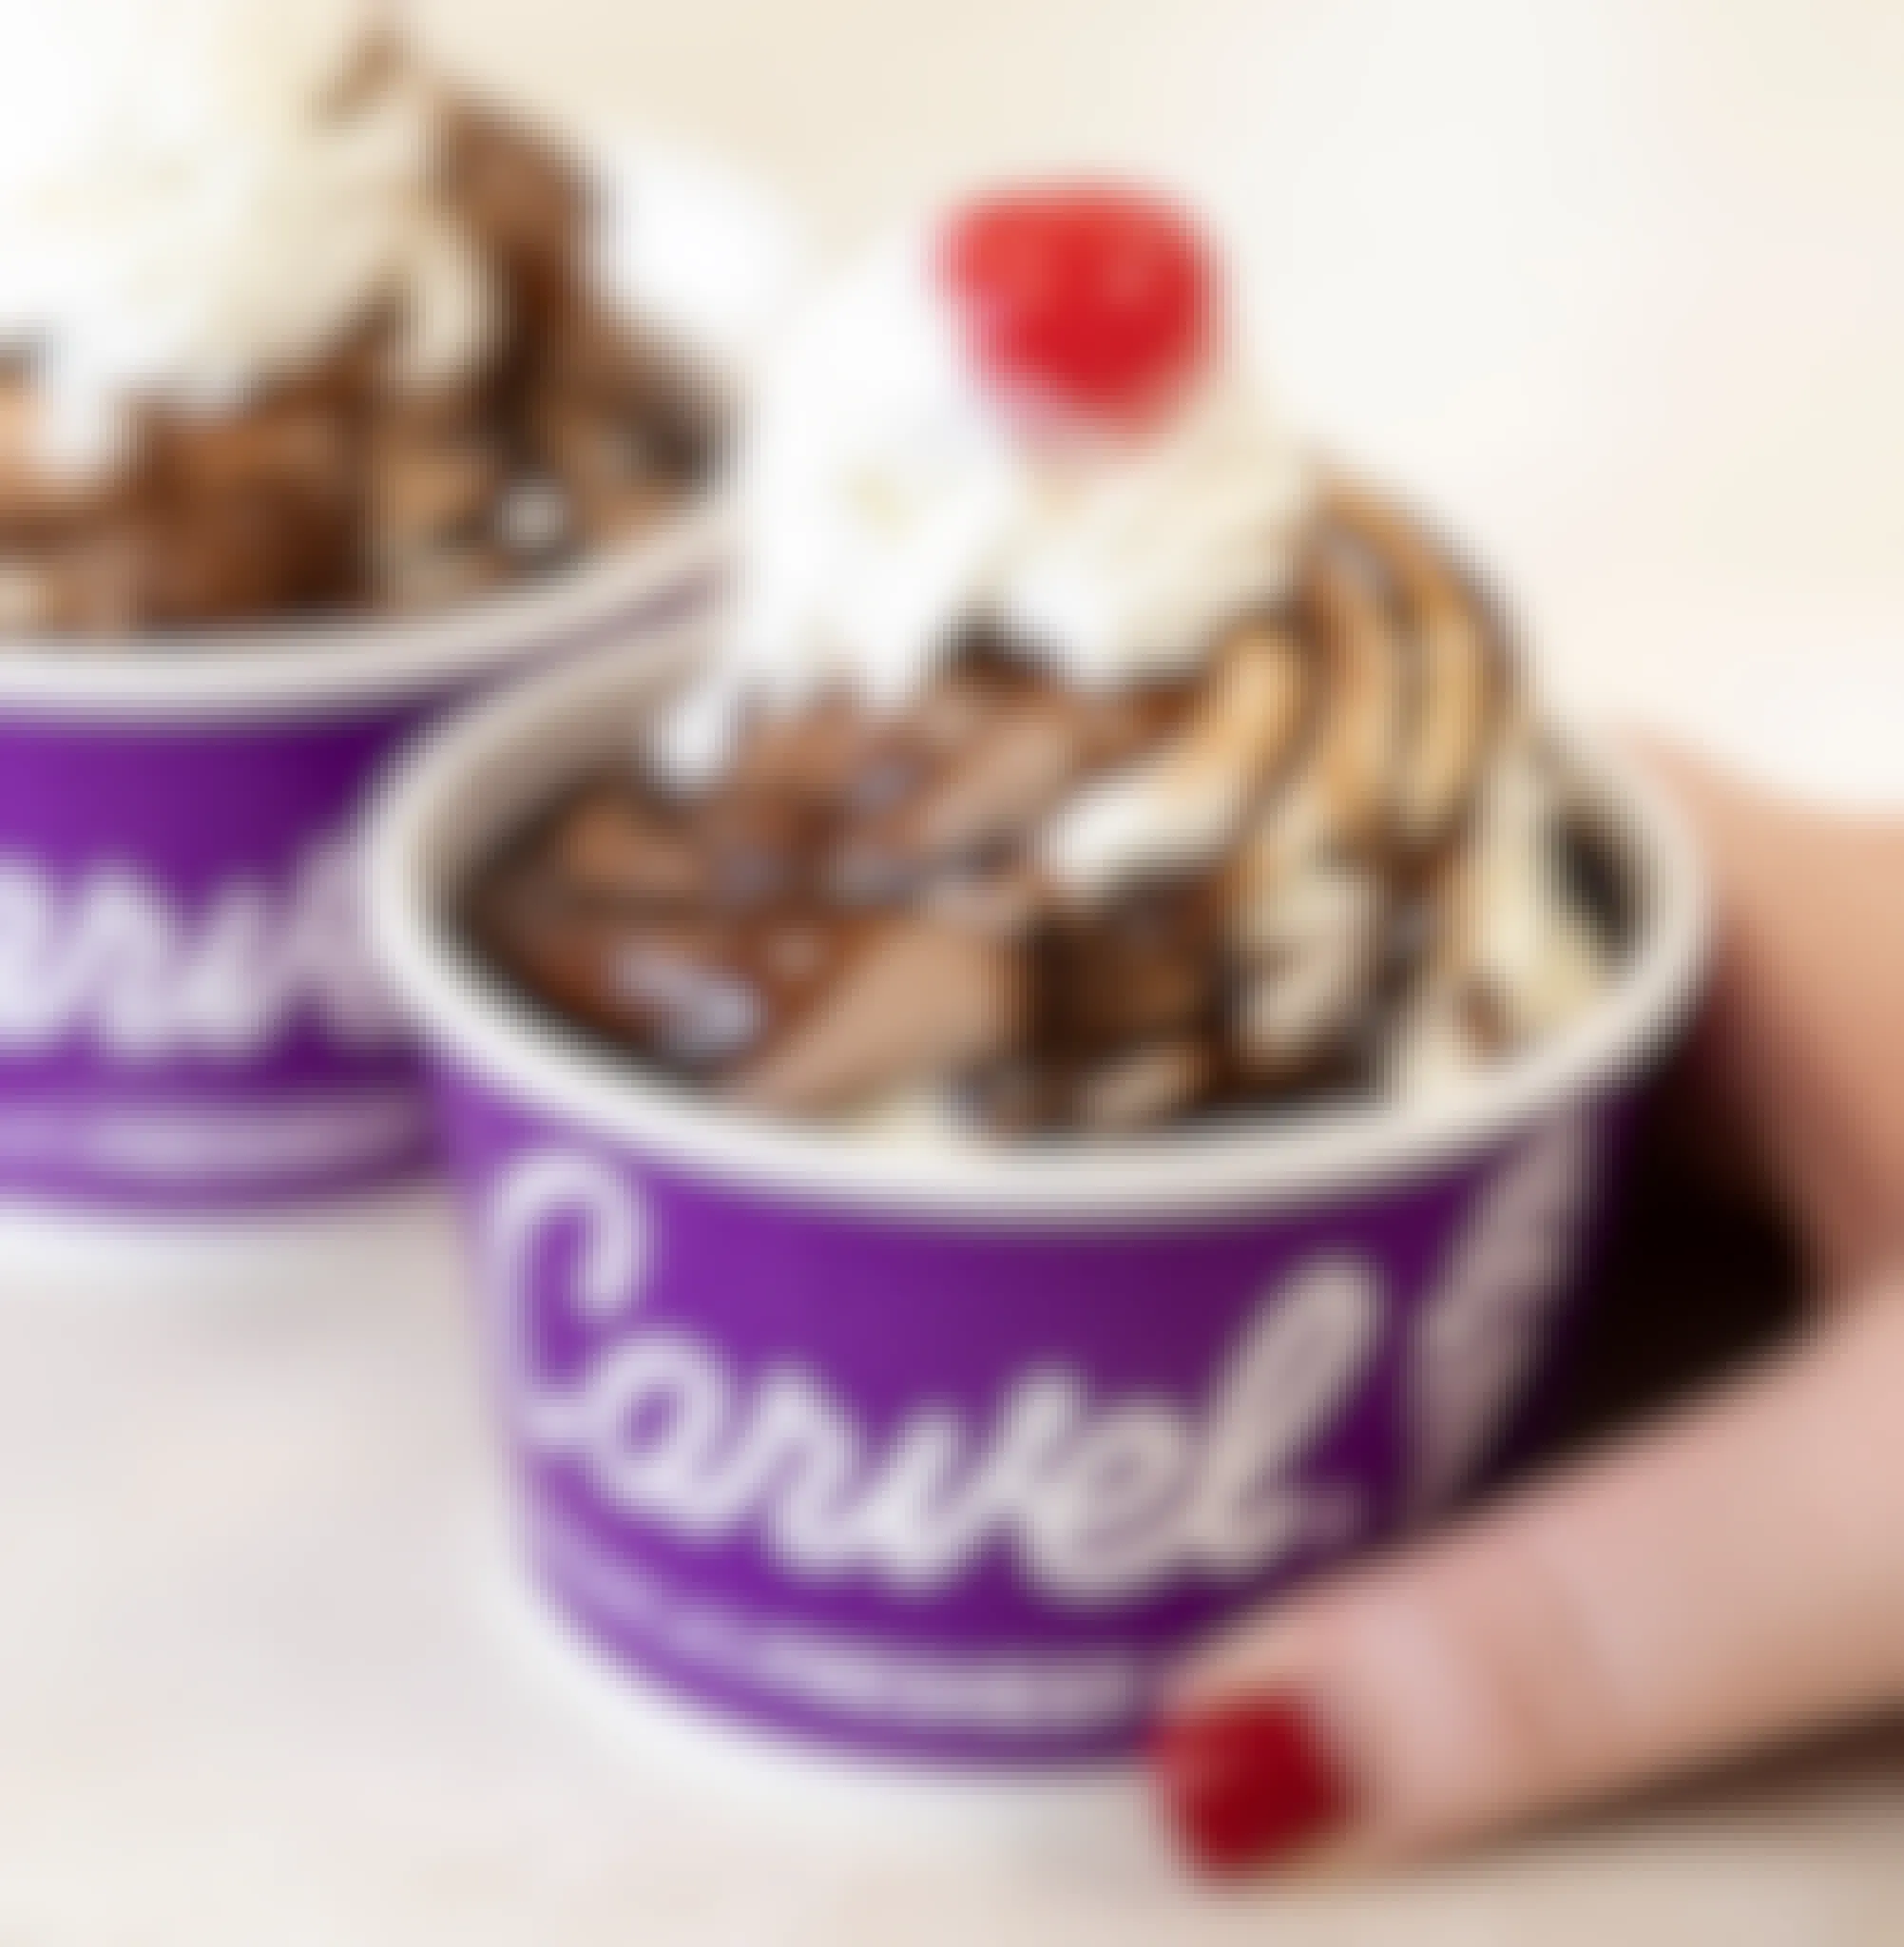 carvel's ice cream sundaes